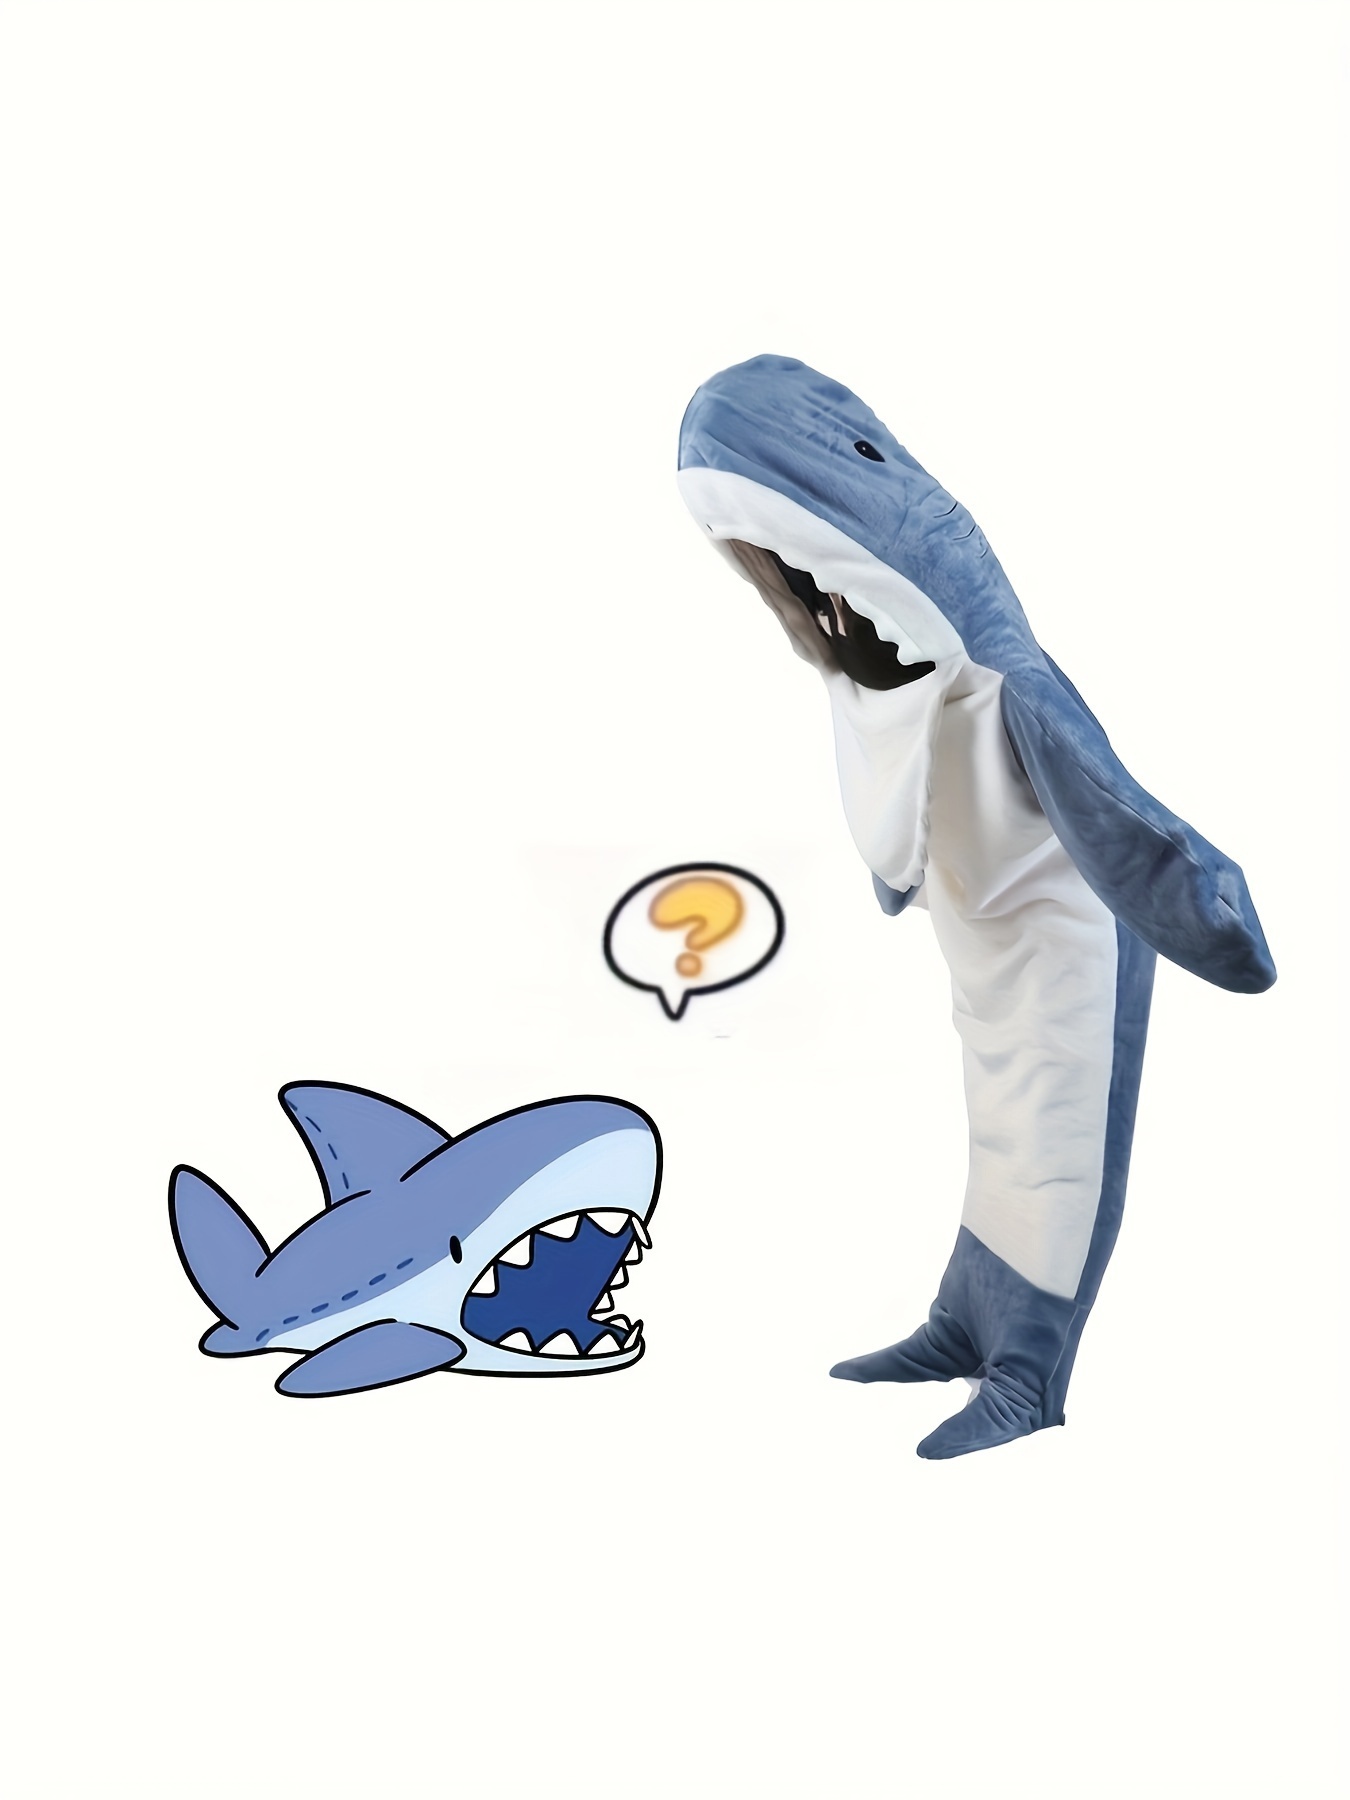 pijamas disfraz en forma de tiburón para adulto, ideal para Cosplay